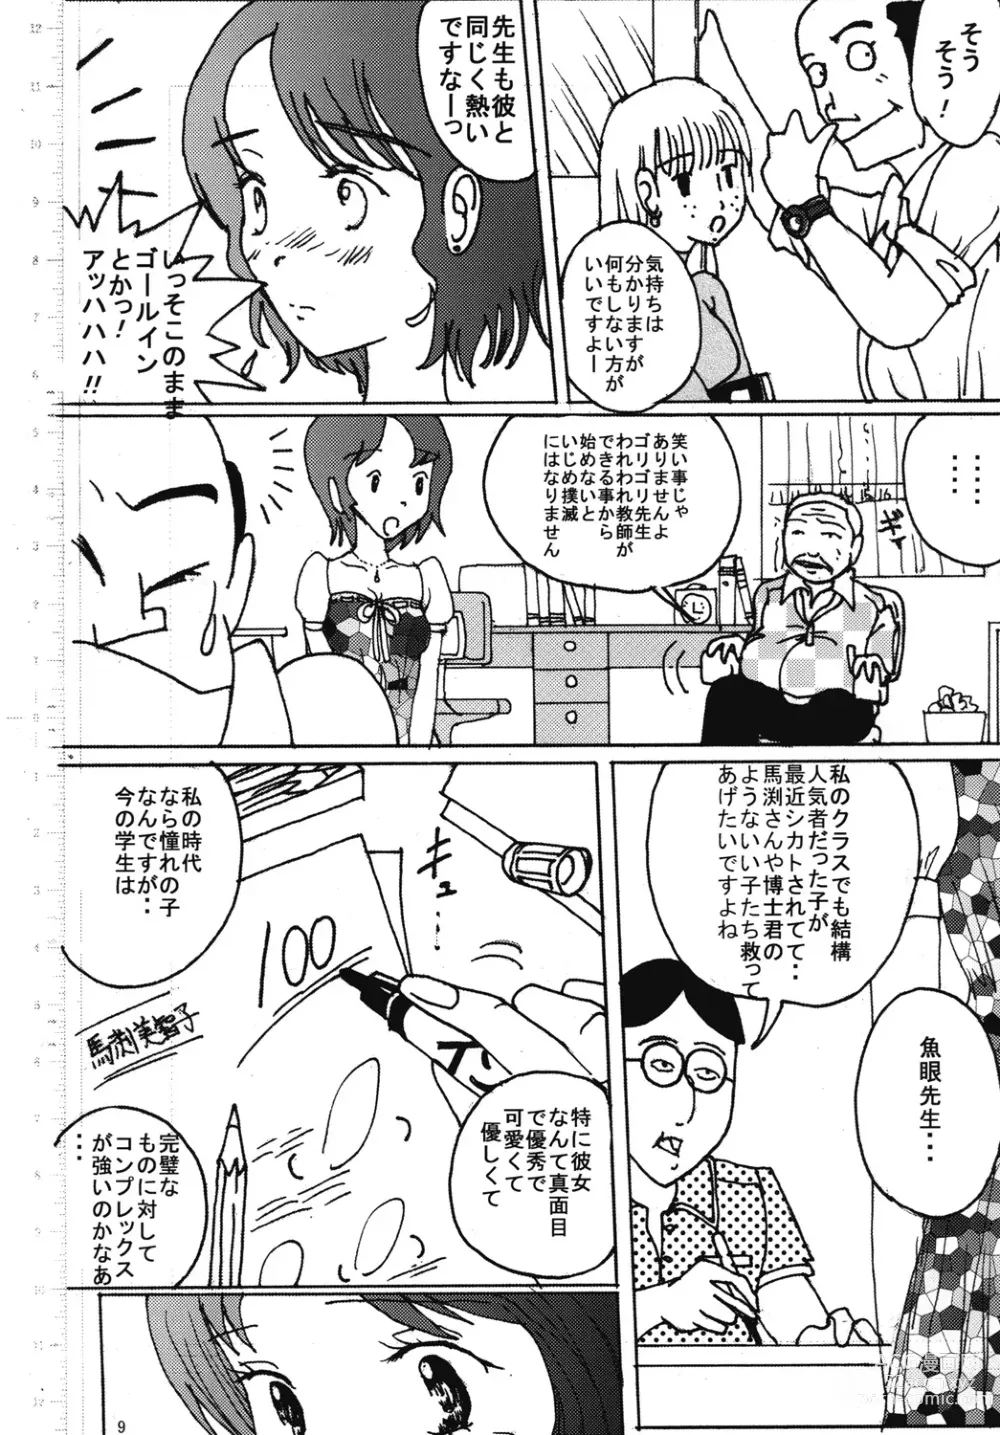 Page 8 of doujinshi Mune Ippai no Dizzy